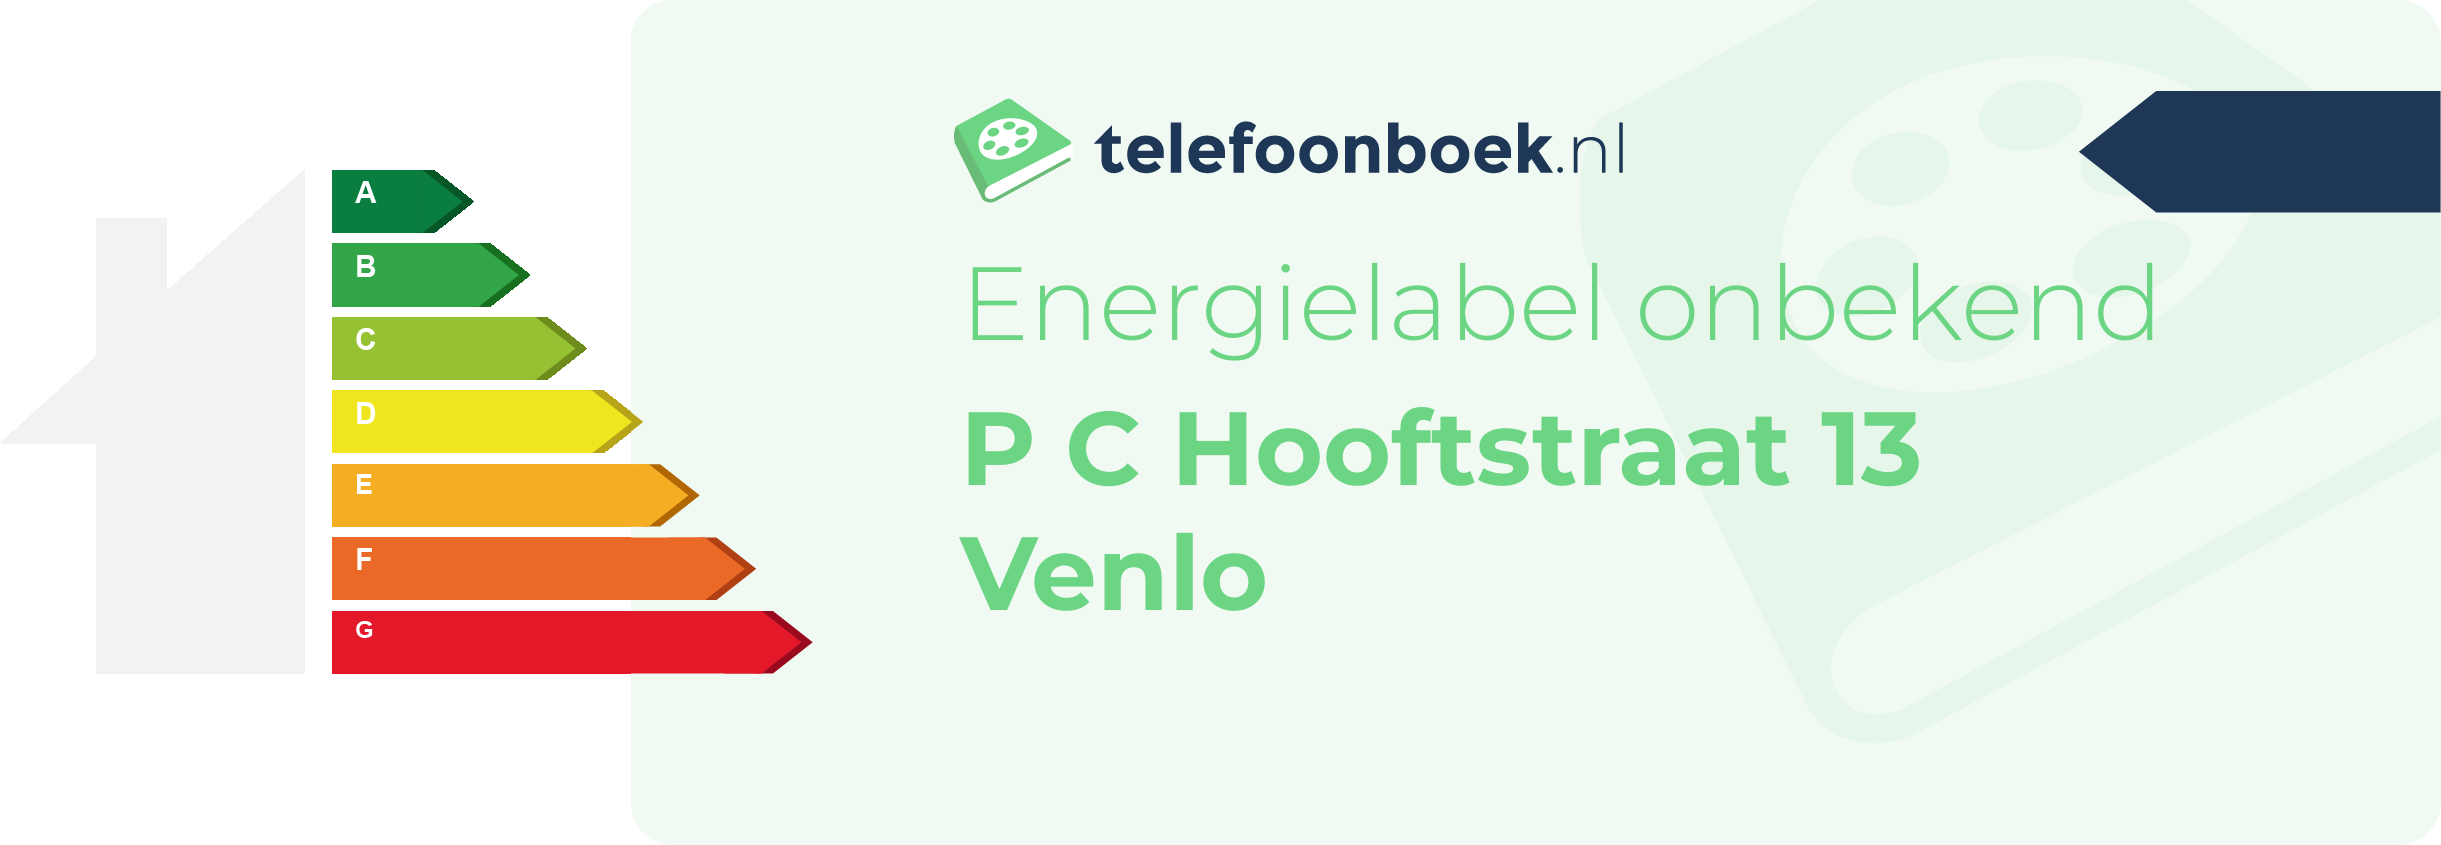 Energielabel P C Hooftstraat 13 Venlo